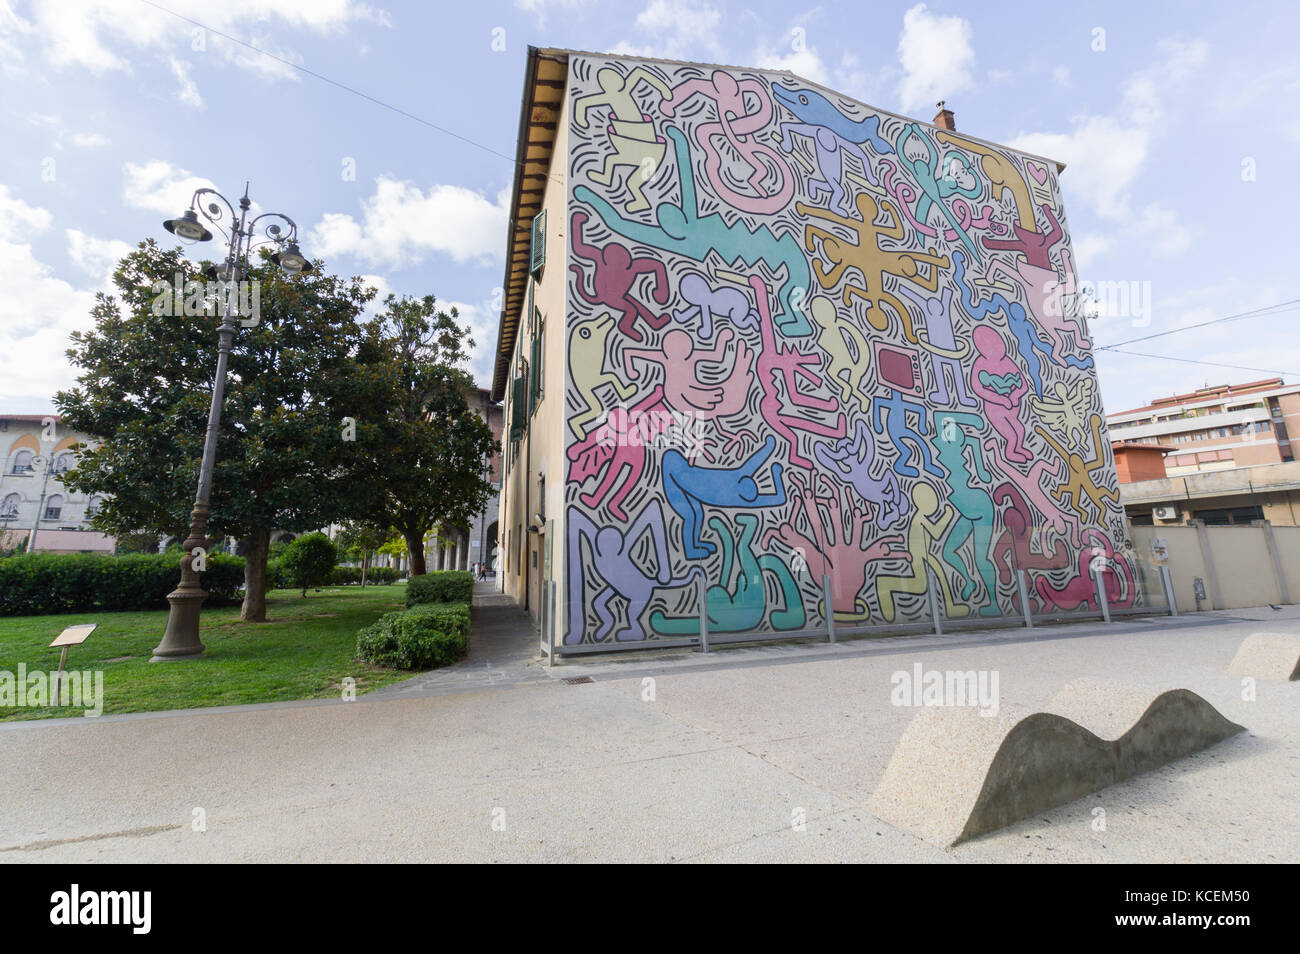 Pise (Italie) - la fresque "Tuttomondo" peinte en 1989 par le célèbre artiste américain Keith Haring Banque D'Images